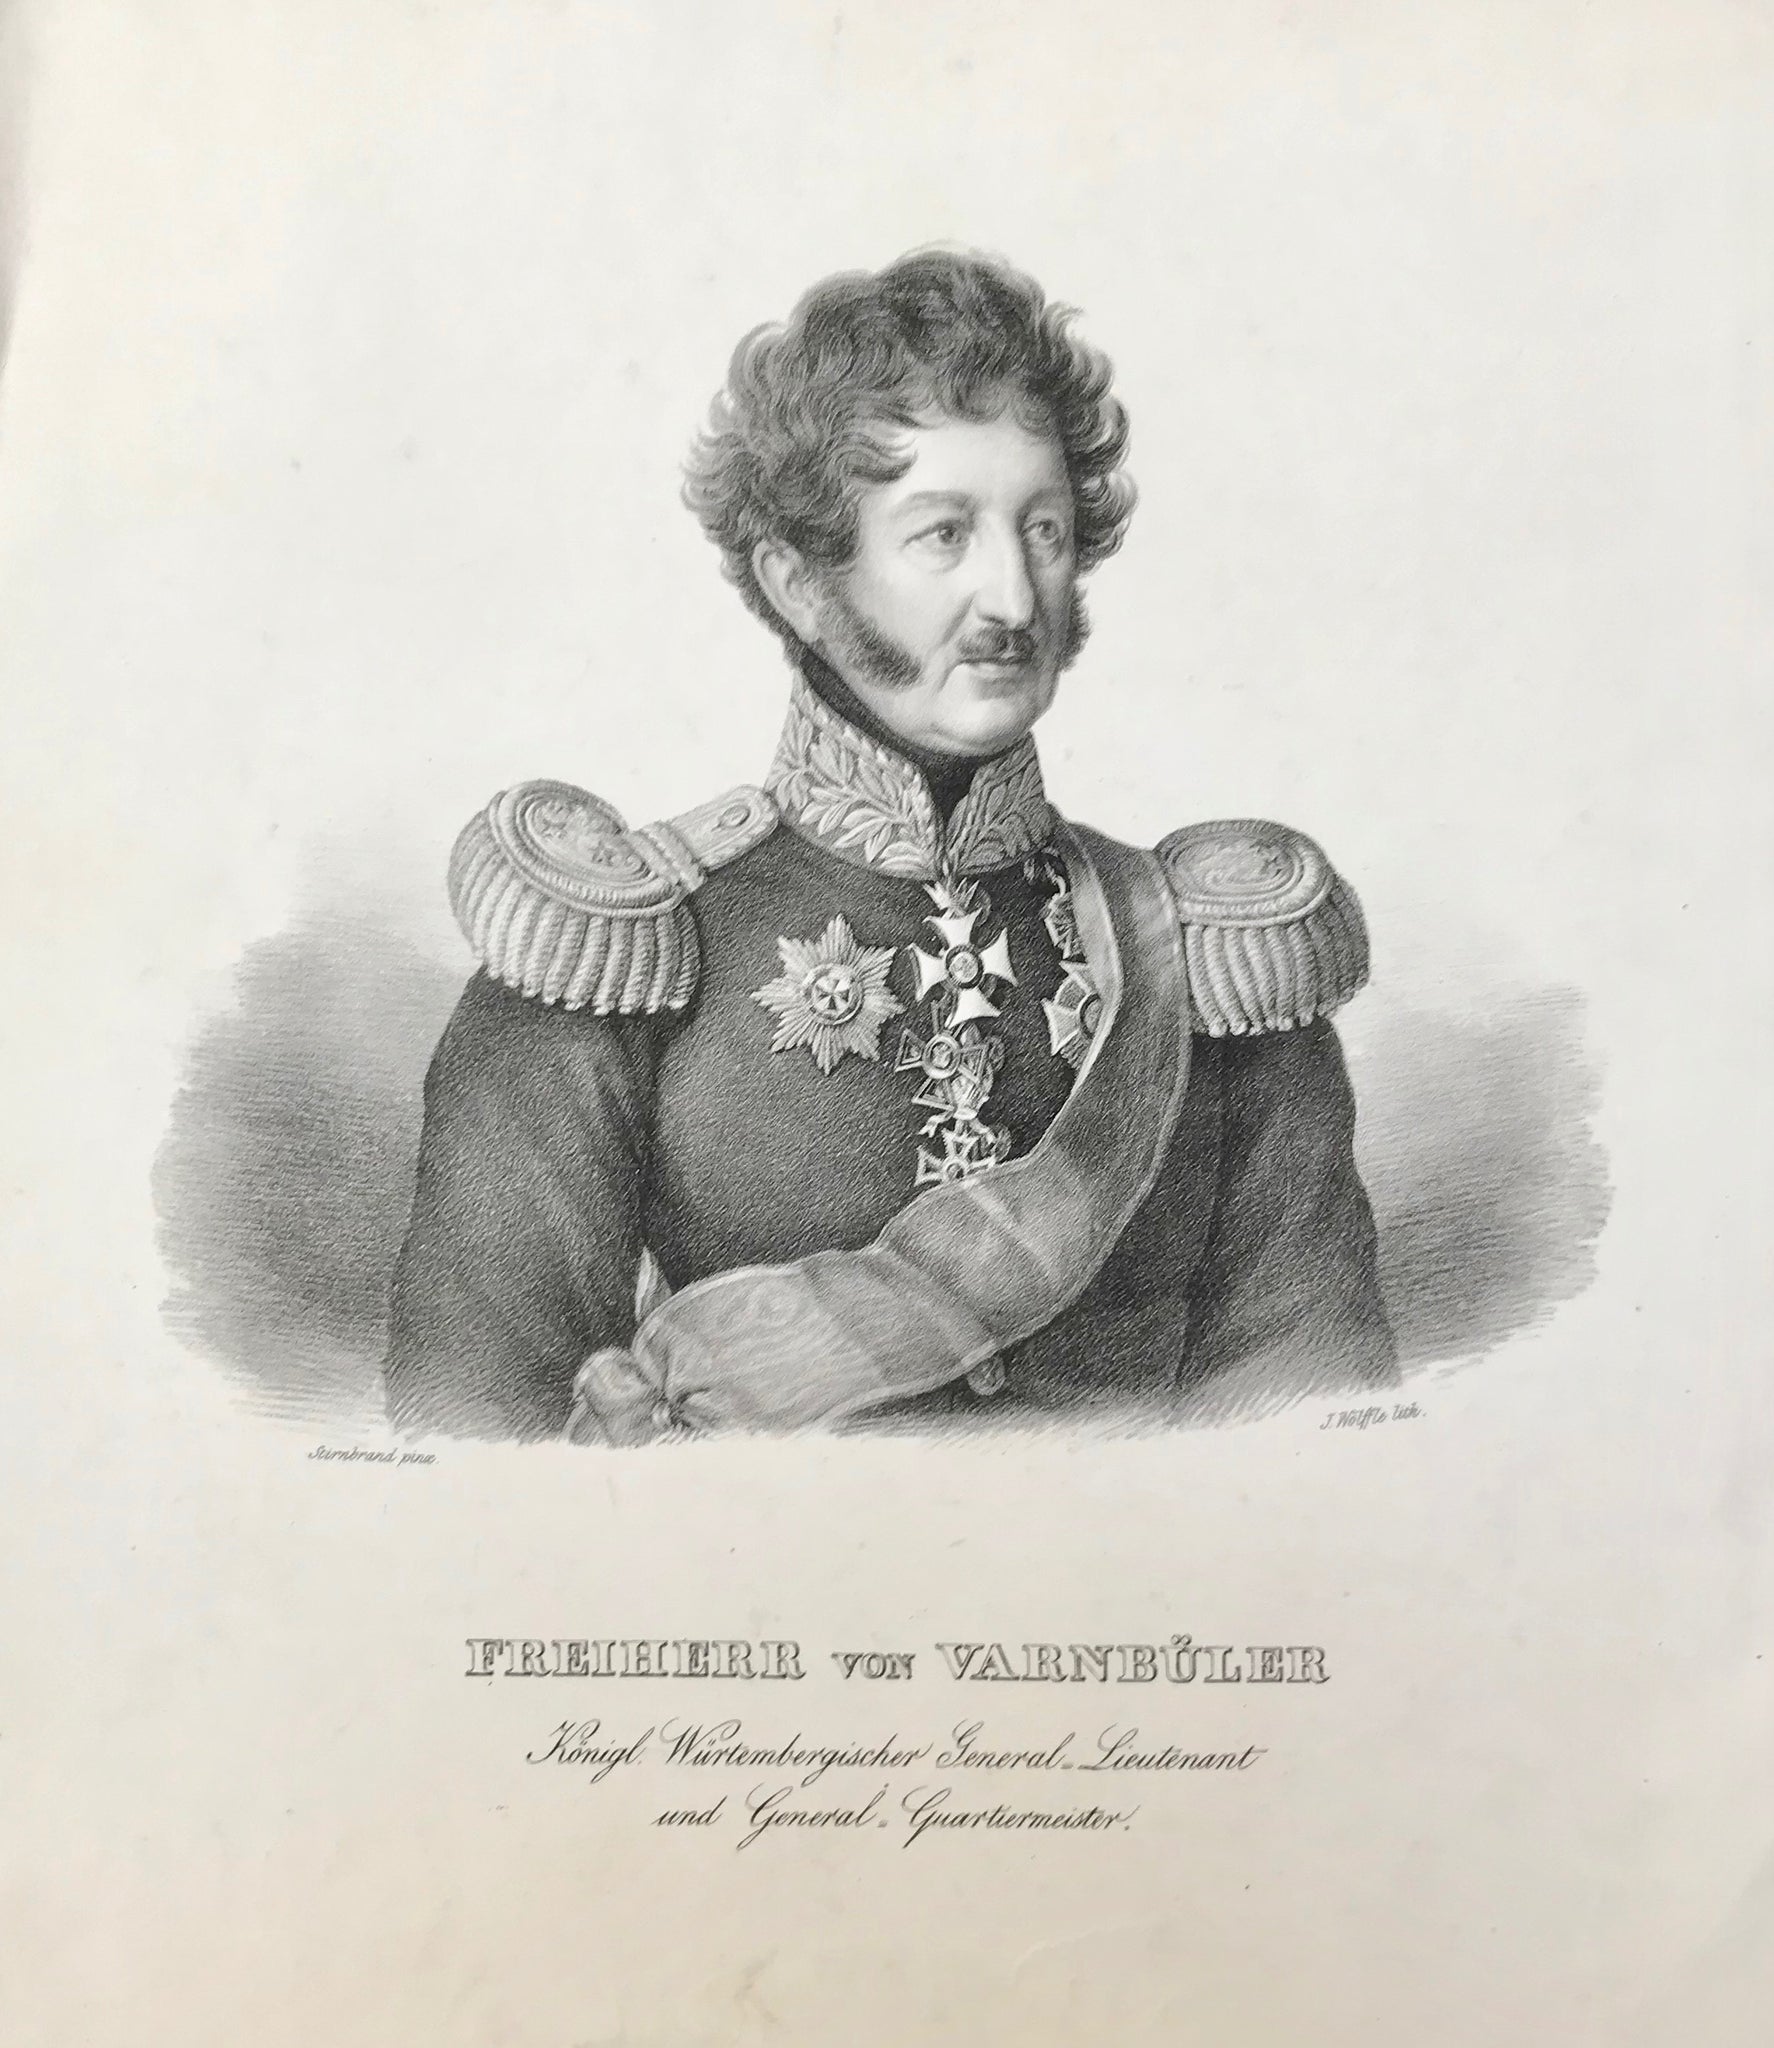 "Freiherr von Varnbueler Koenigl. Wuerttembergischer General-Lieutenant und General-Quartiermeister".  Lithography by by J. Woelffle after Franz Seraph Stirnbrand (1788 - 1882). Ca. 1850.